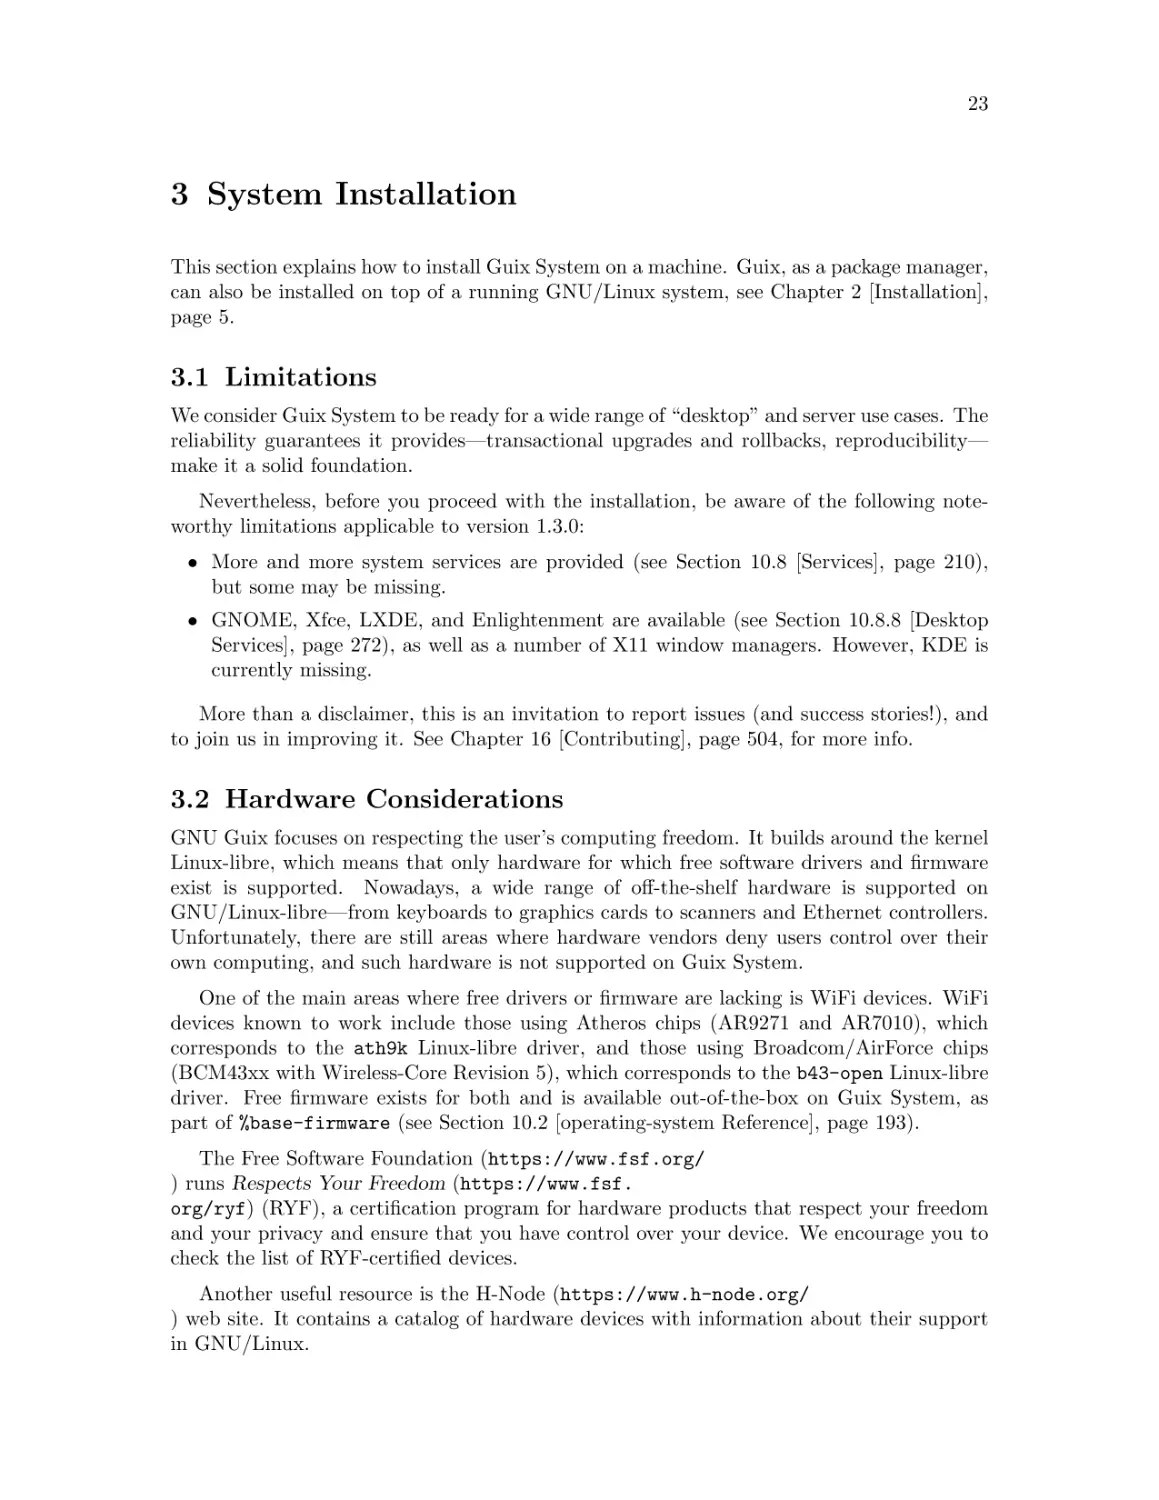 System Installation
Limitations
Hardware Considerations